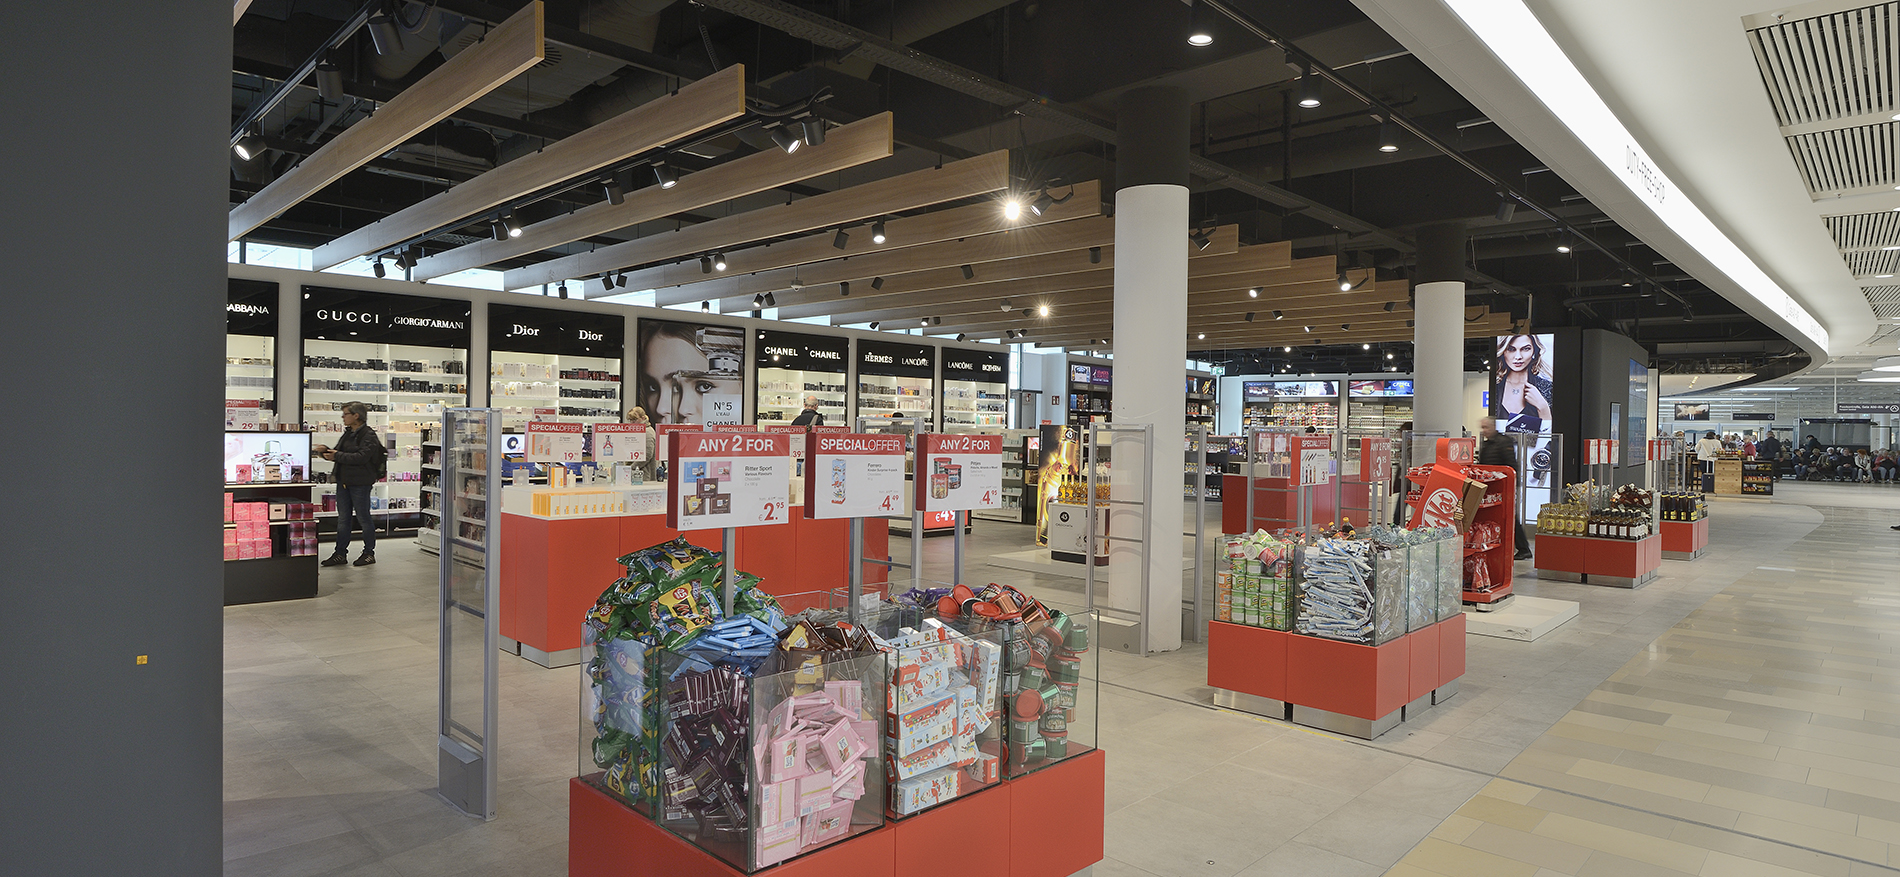 Shop&Fly Luchthaven | Bremen (DE) - Retail design